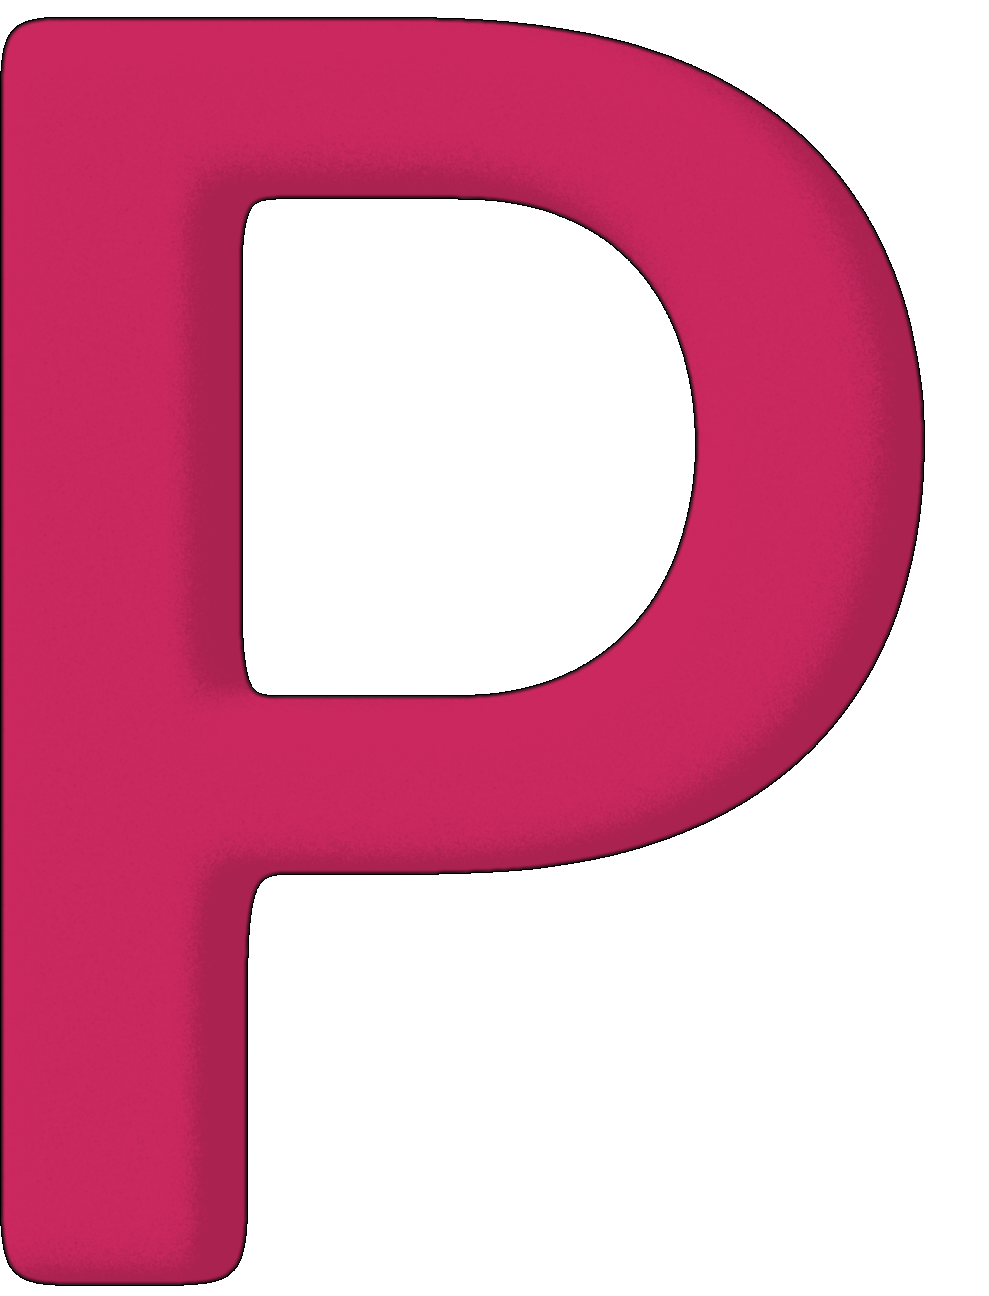 P